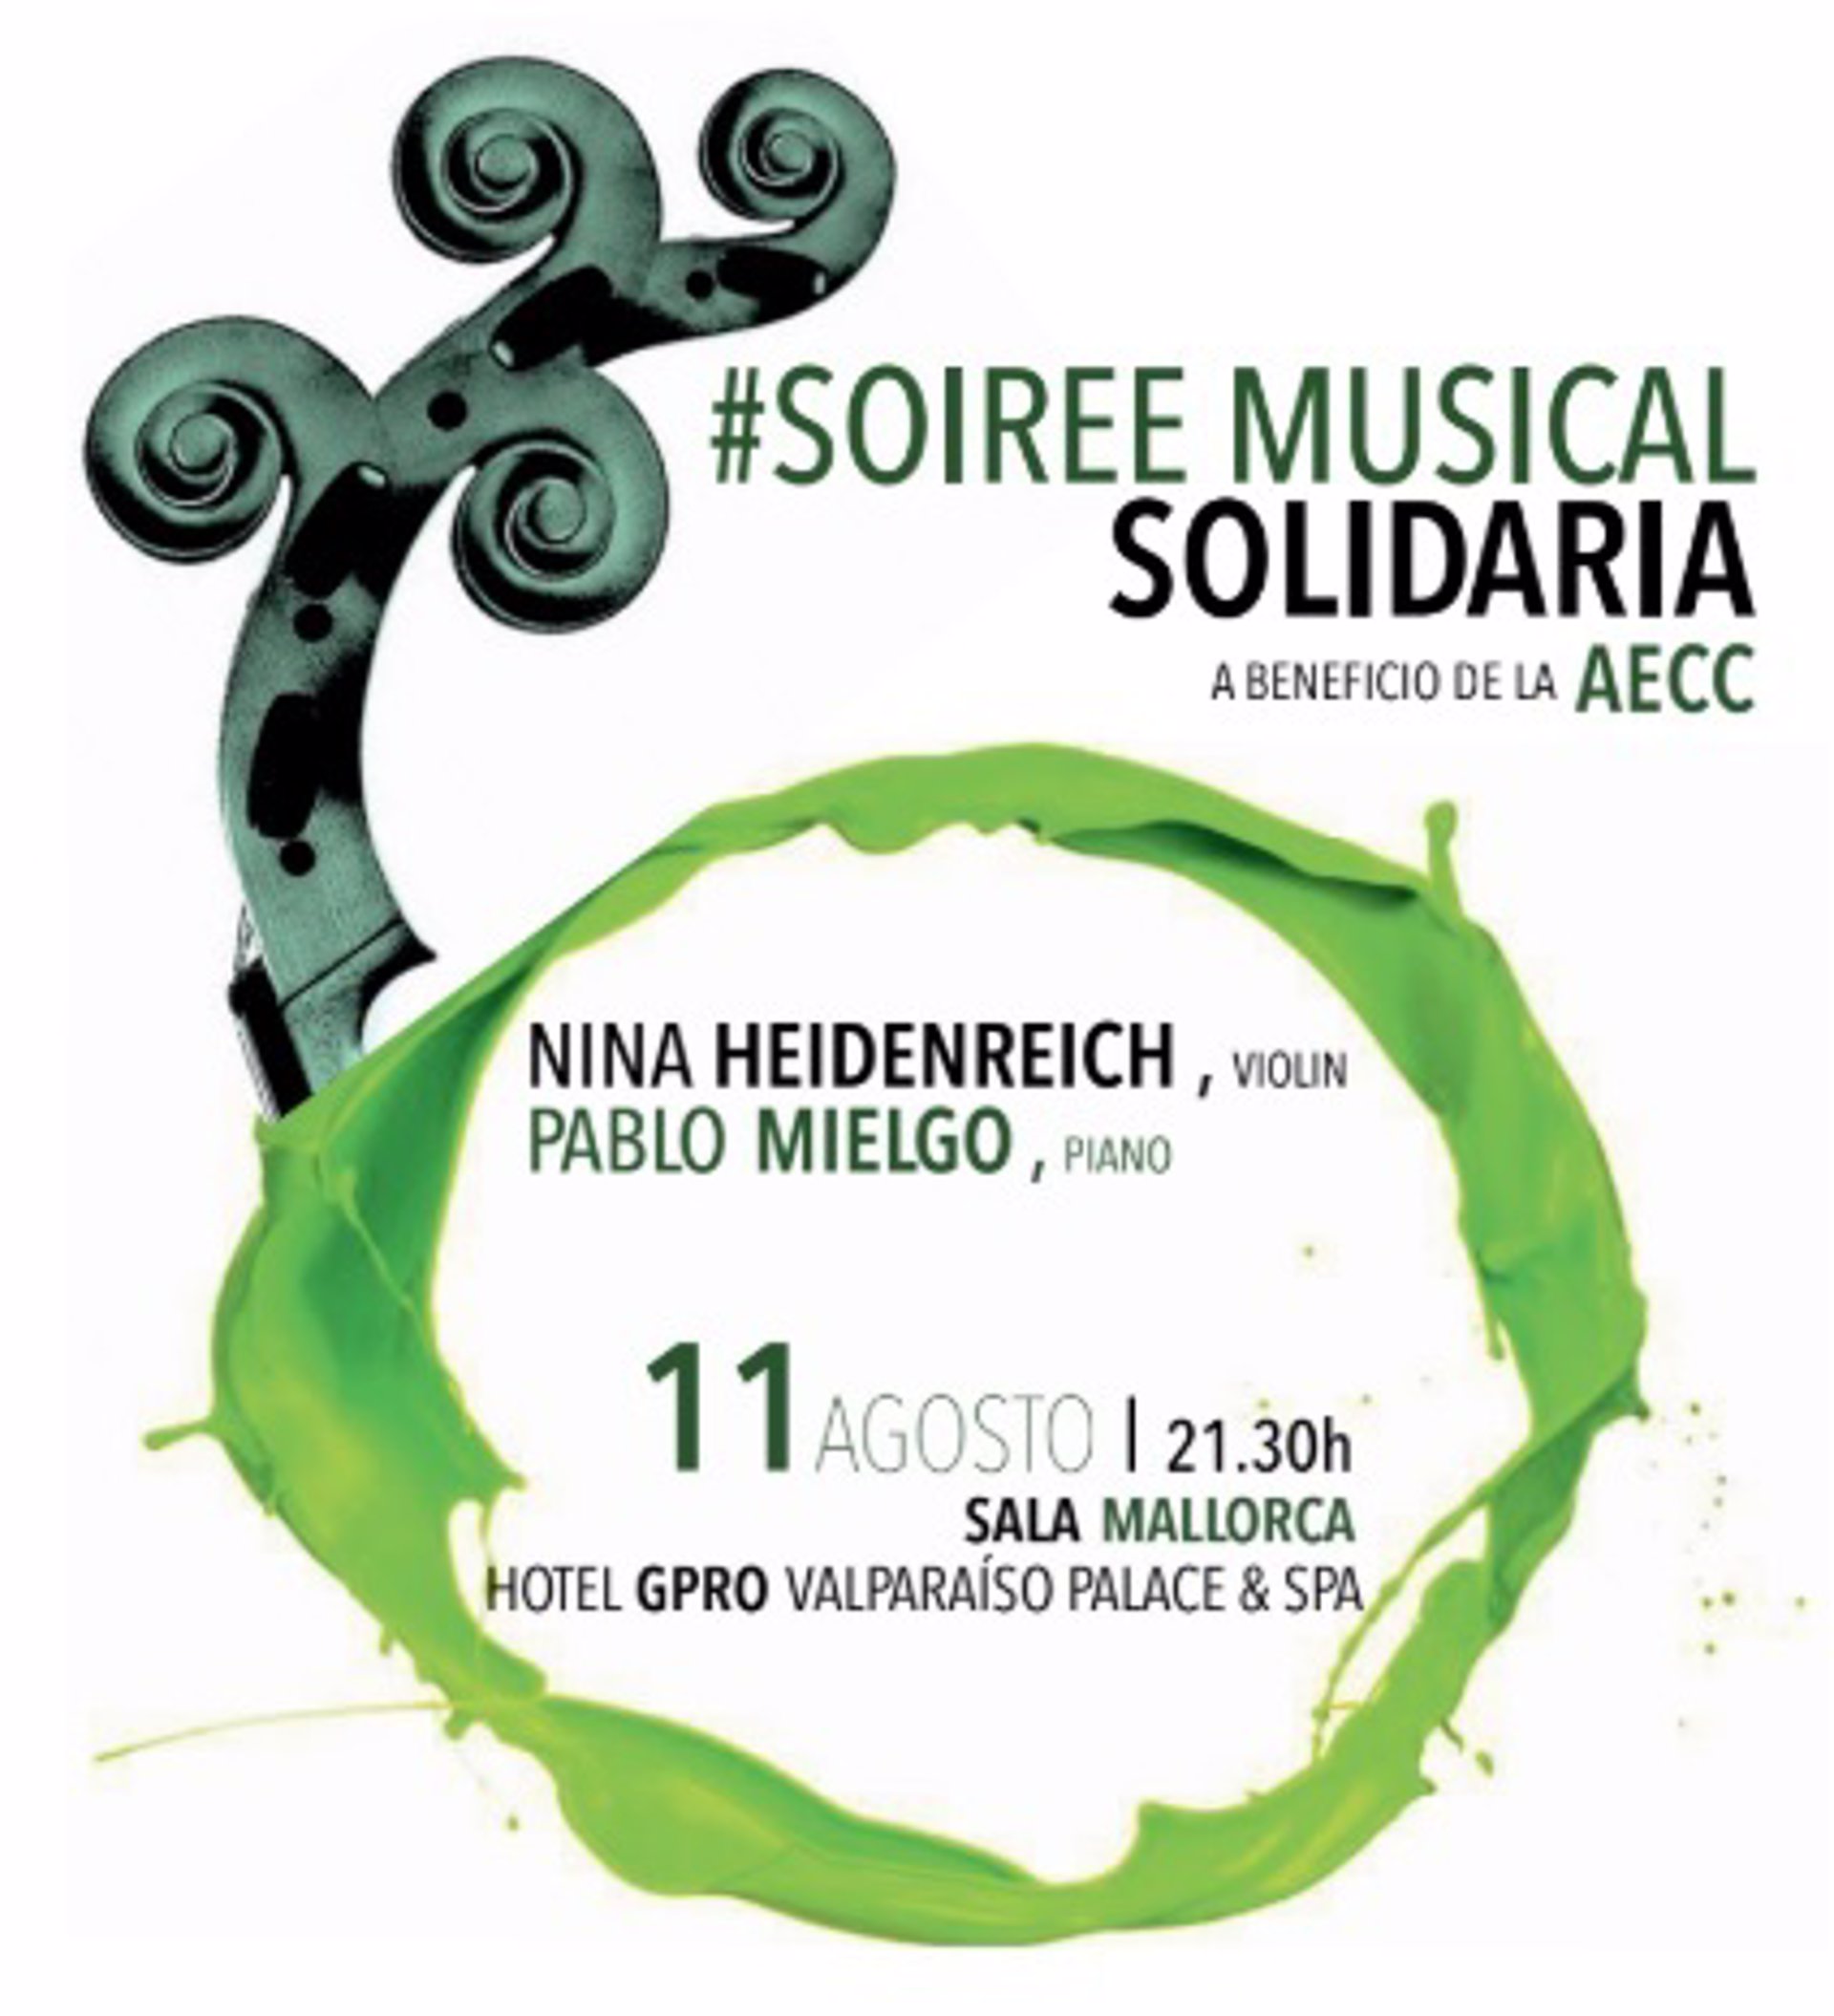 La violinista Nina Heidenreich y el pianista Pablo Mielgo ofrecen este sábado un concierto a beneficio de la AECC